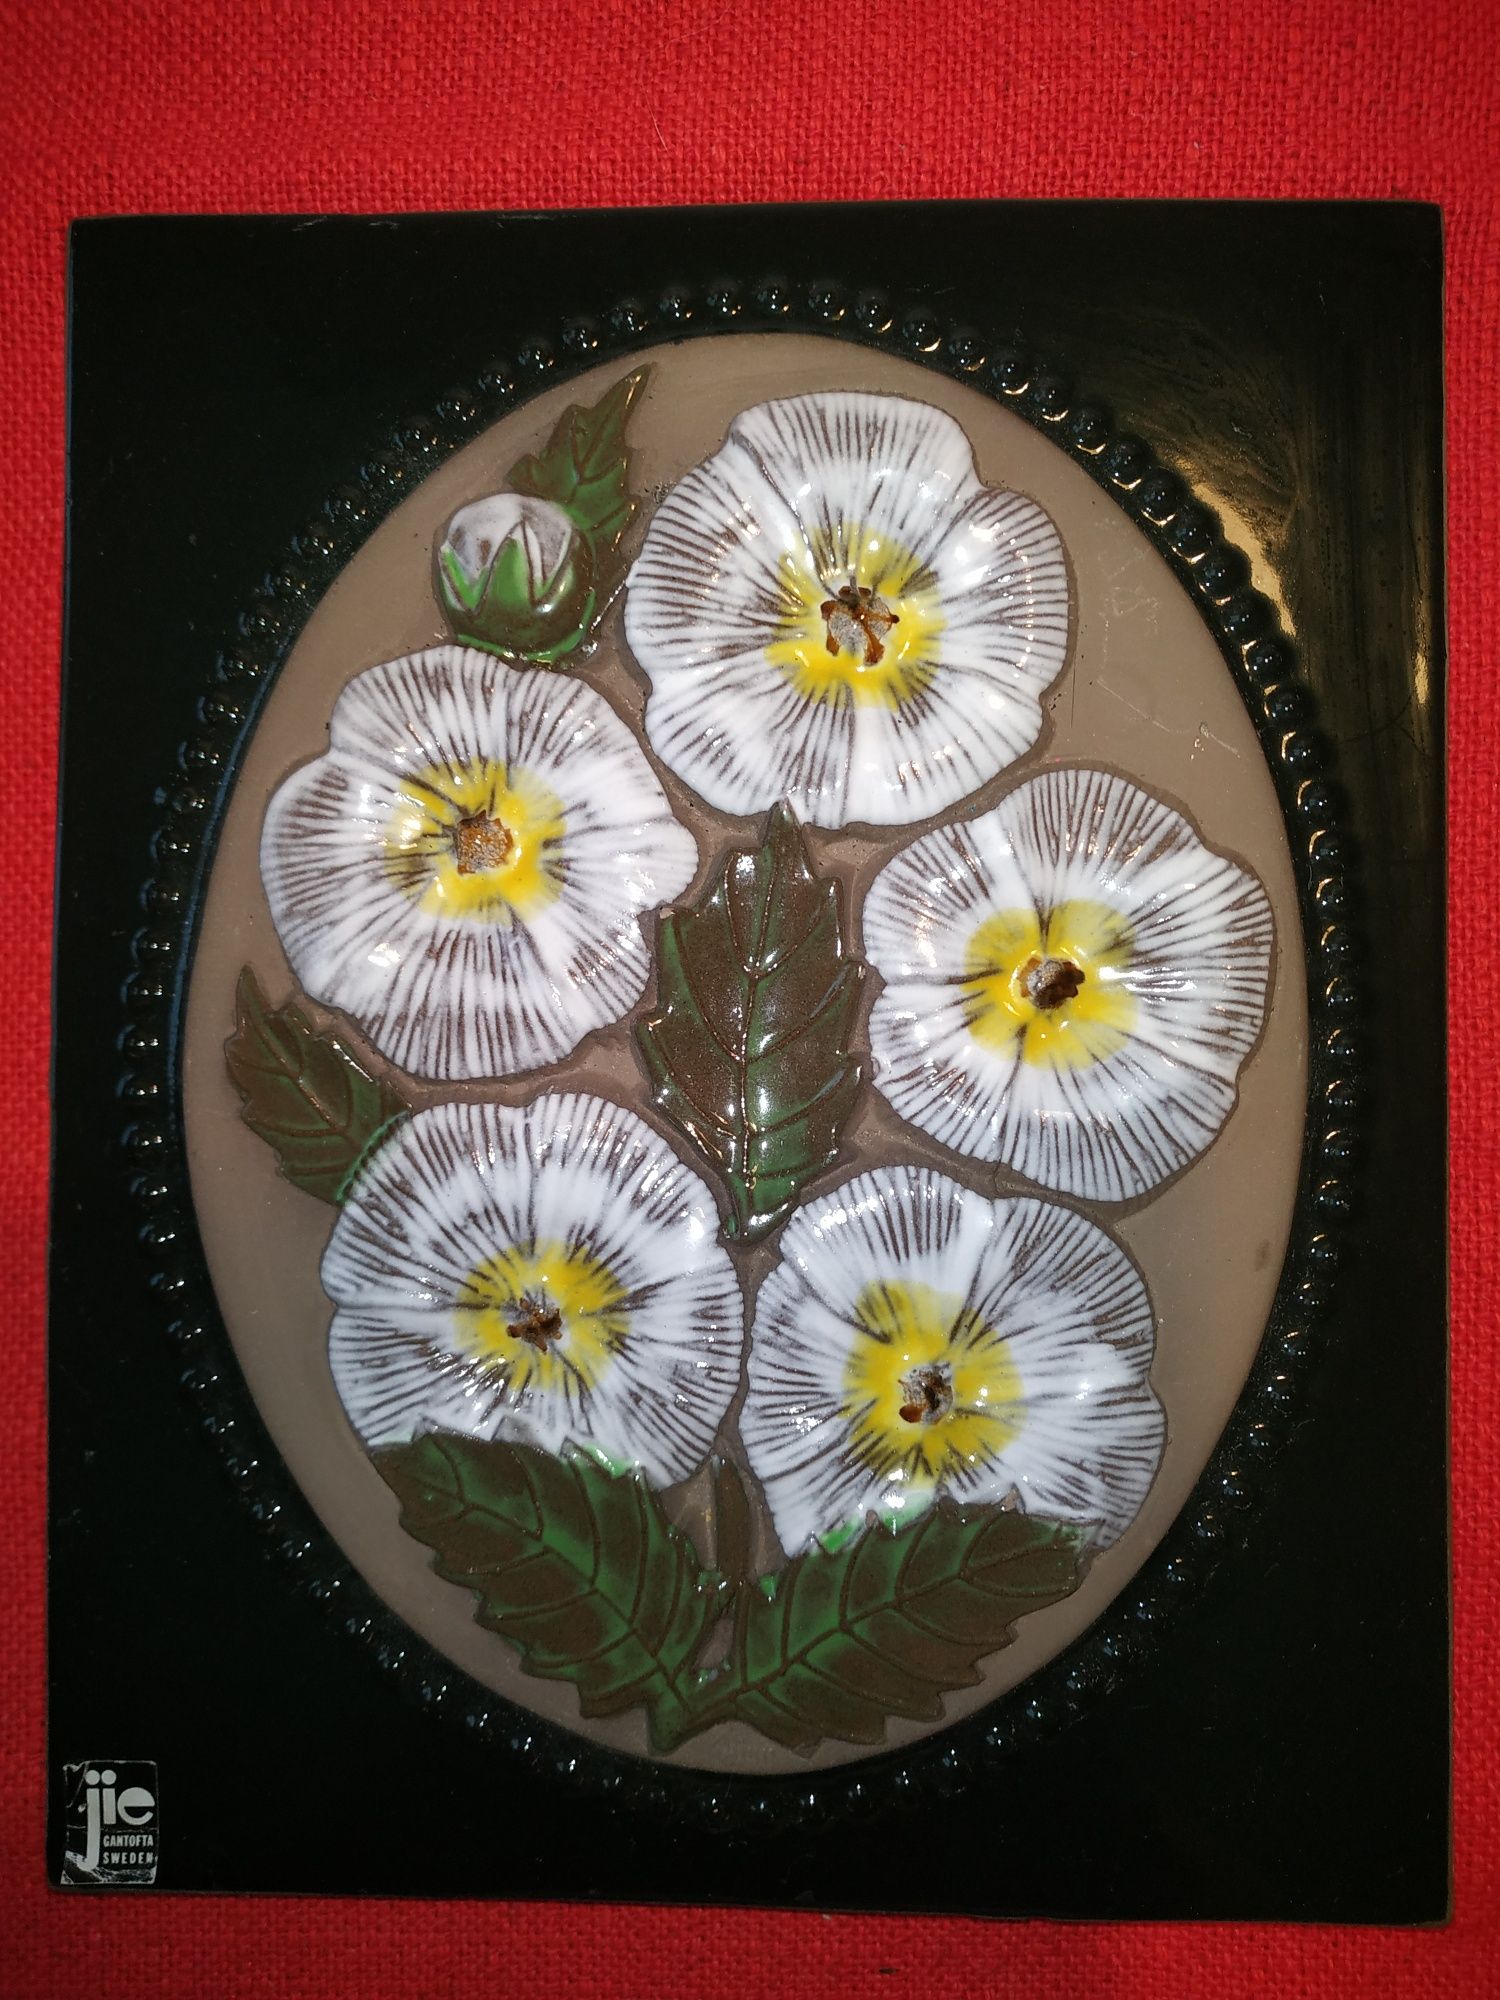 Jie Gantofa obrazek kafel Szwedzi duży. Motyw z kwiatami. Sygnatura.